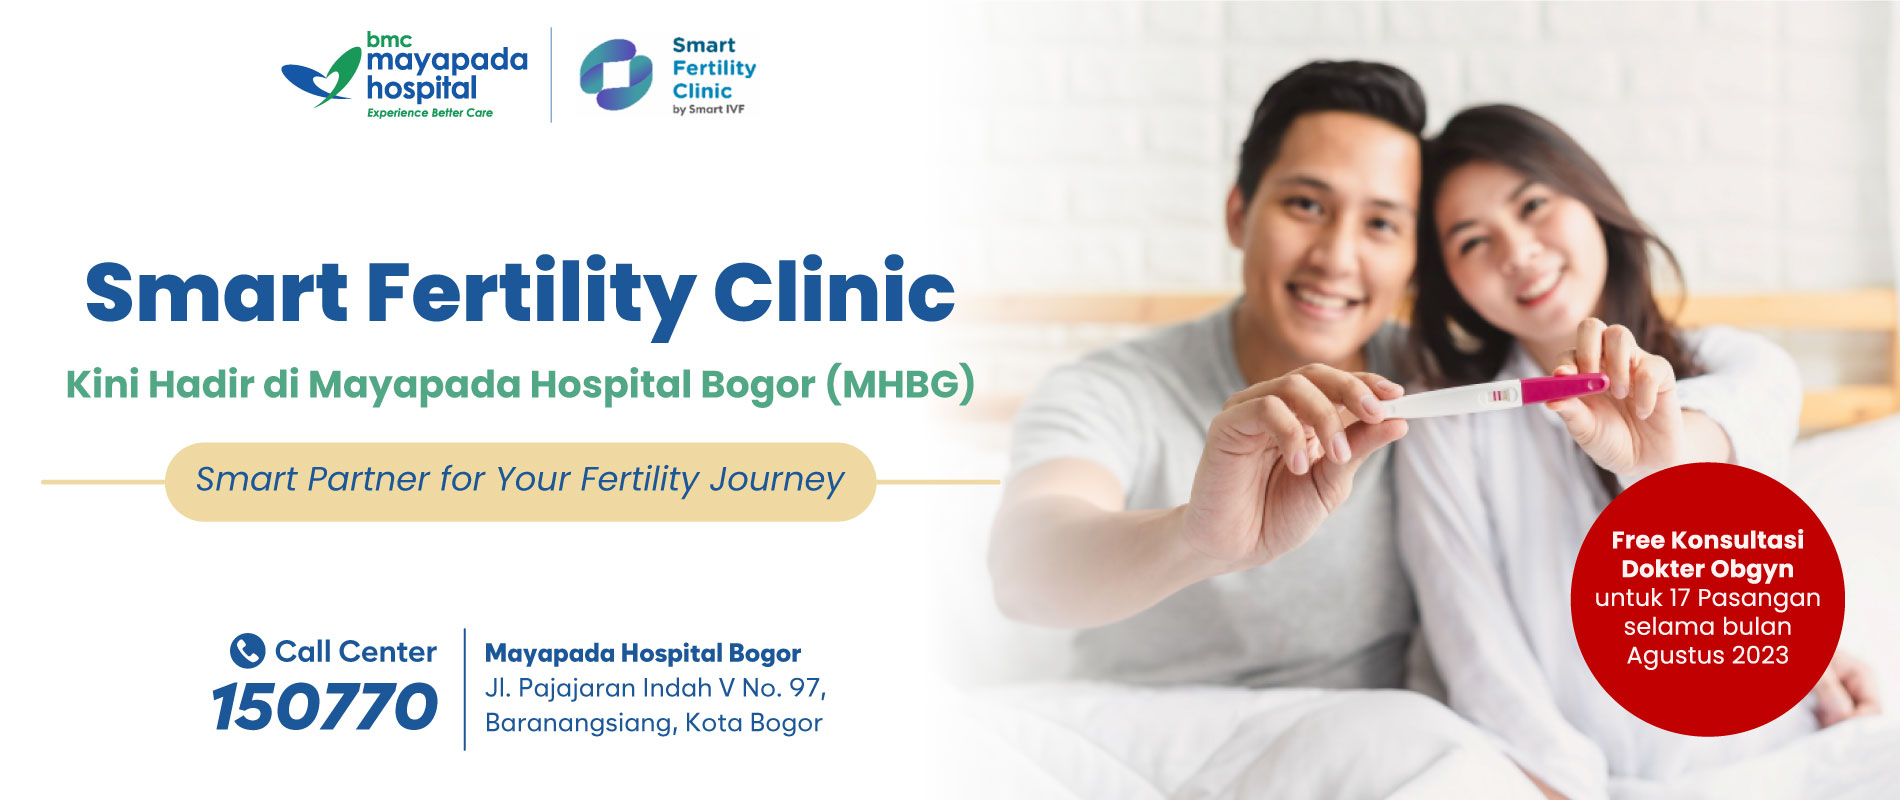 Smart Fertility Clinic Hadir di Mayapada Hospital Bogor (MHBG) IMG